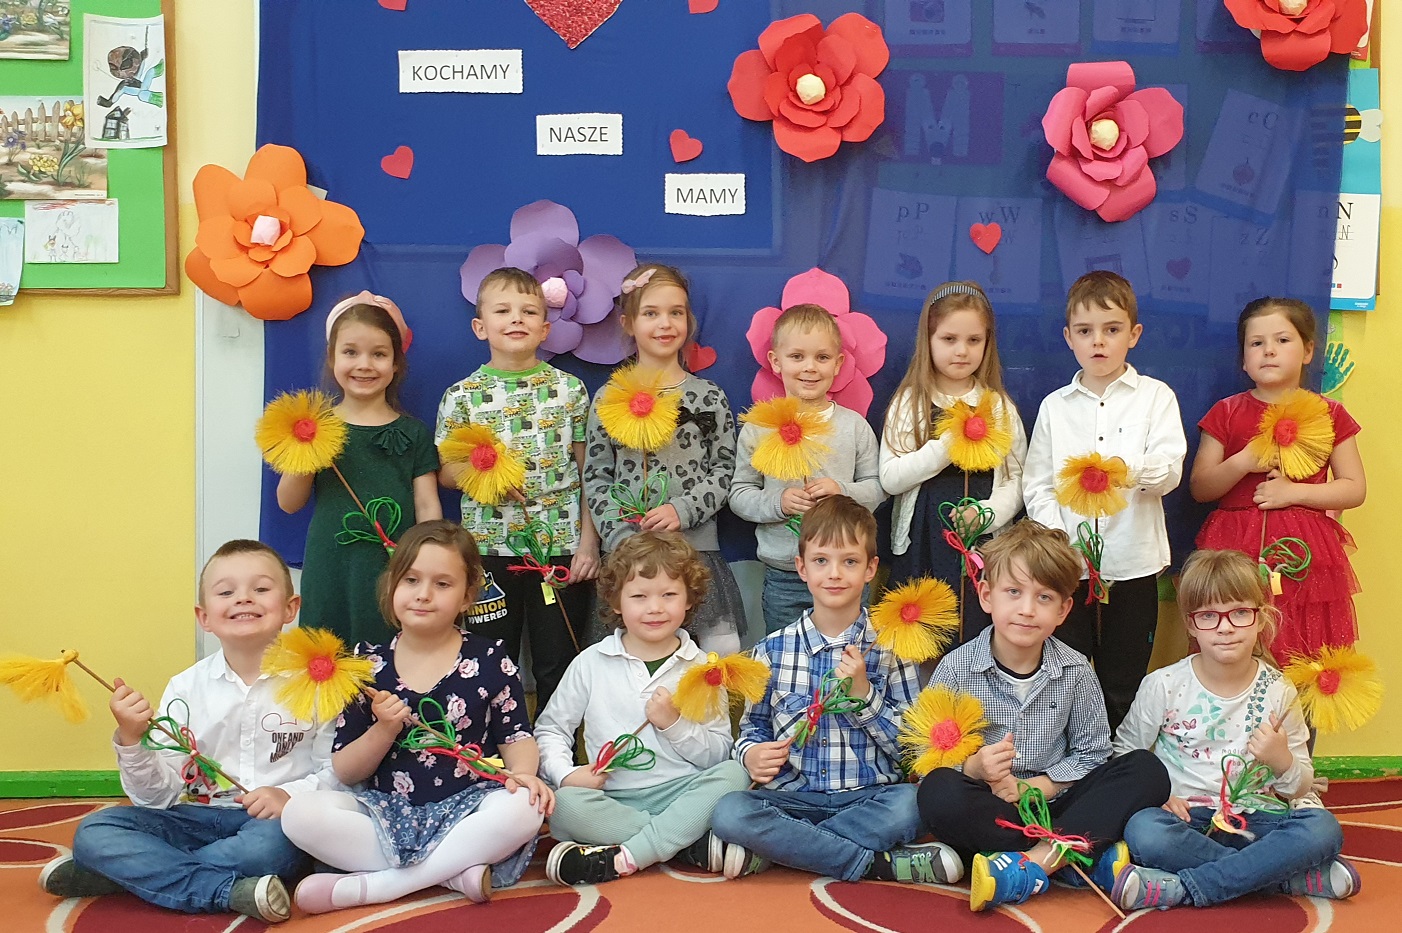 Na zdjęciu dzieci z grupy Misiów pozują z własnoręcznie wykonanymi ze sznurka kwiatami na niebieskim tle z napisem "kochamy nasze mamy"